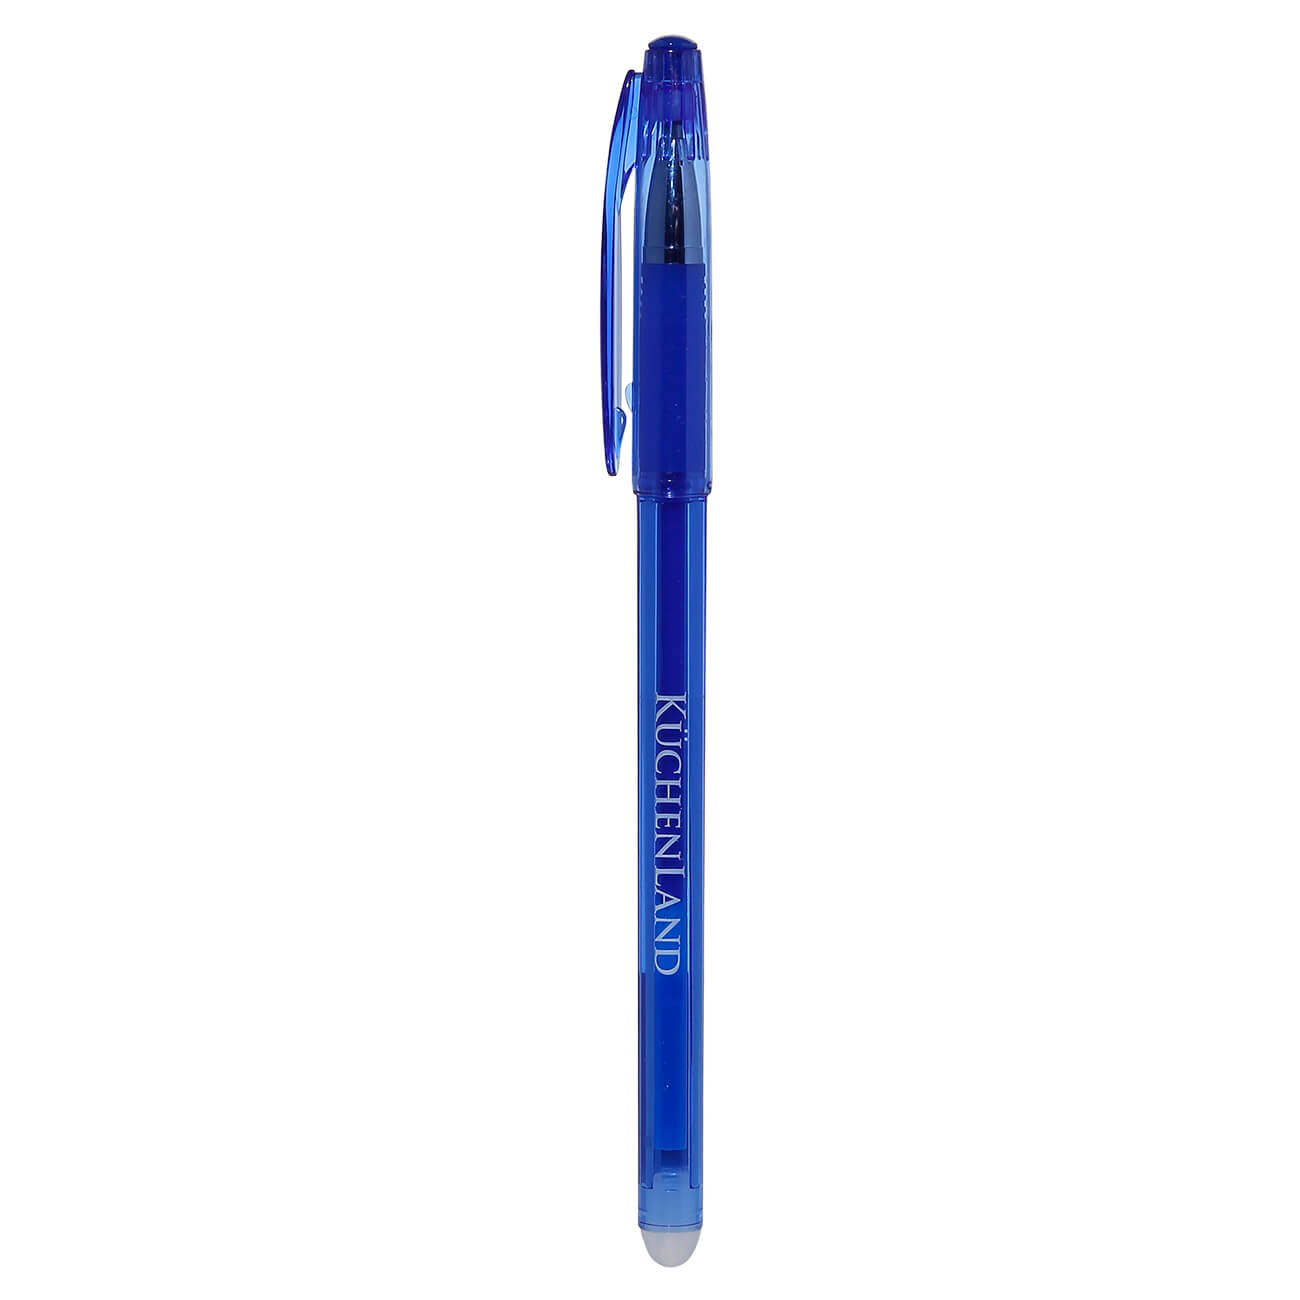 Ручка гелевая, 15 см, стираемые чернила, синяя, Draw стираемая гелевая ручка staff